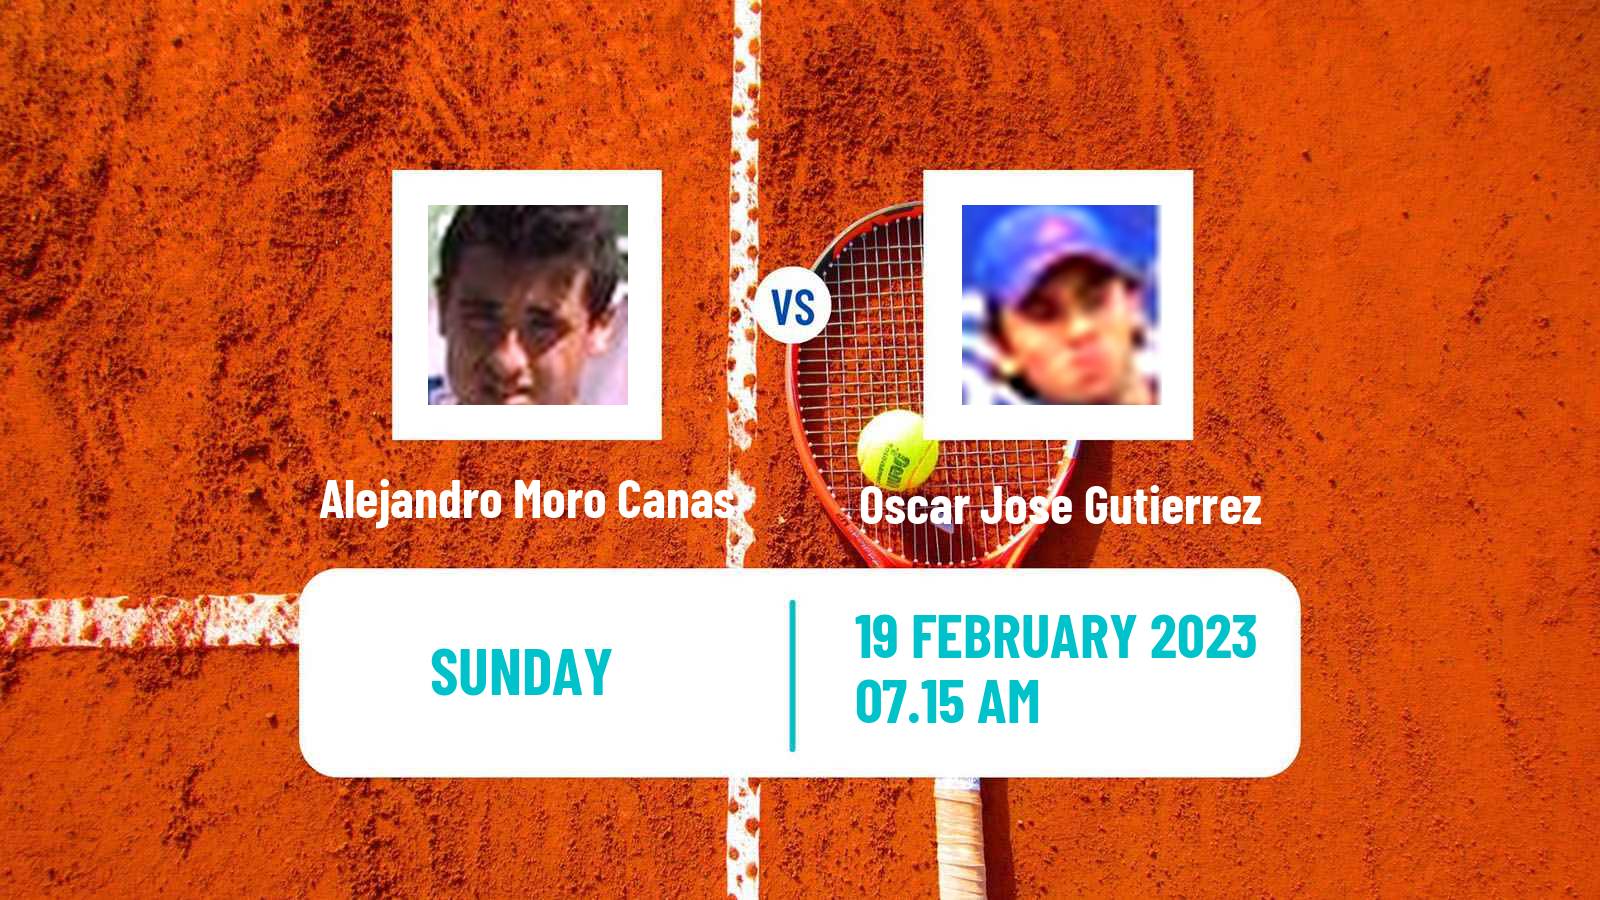 Tennis ATP Challenger Alejandro Moro Canas - Oscar Jose Gutierrez